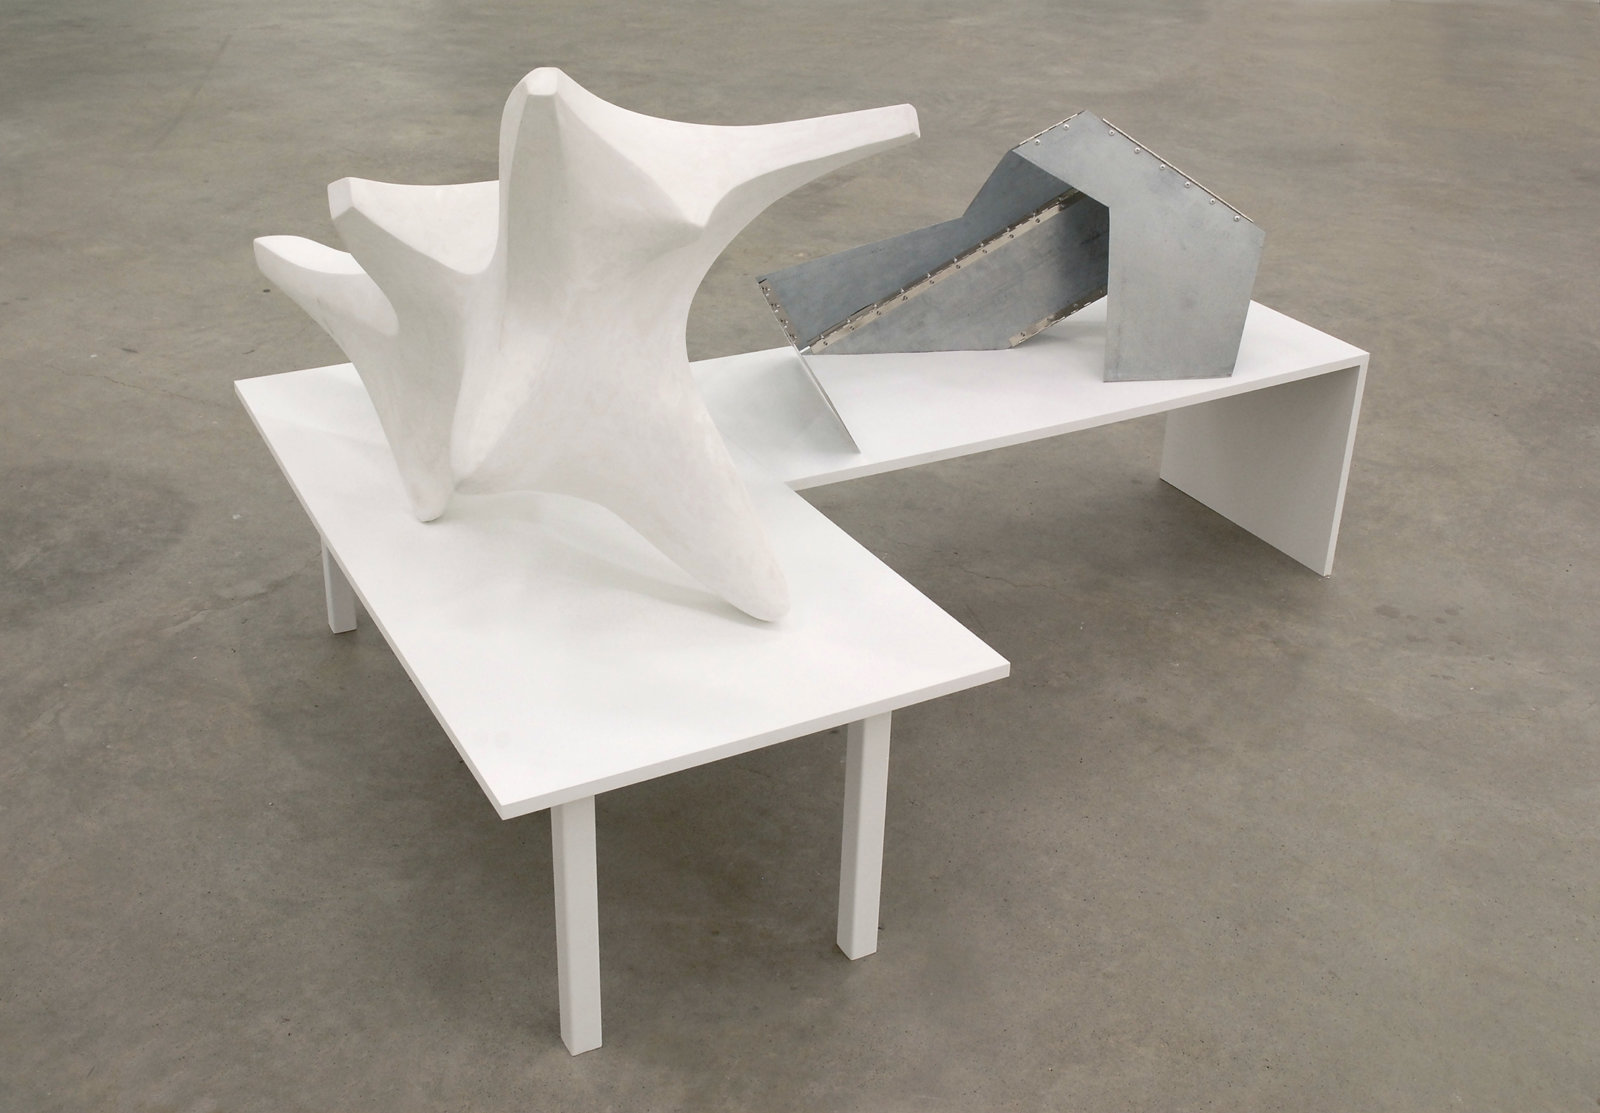 Damian Moppett, Figure In Transition, 2007–2008, plaster, steel, wood, 45 x 67 x 48 in. (114 x 170 x 122 cm)